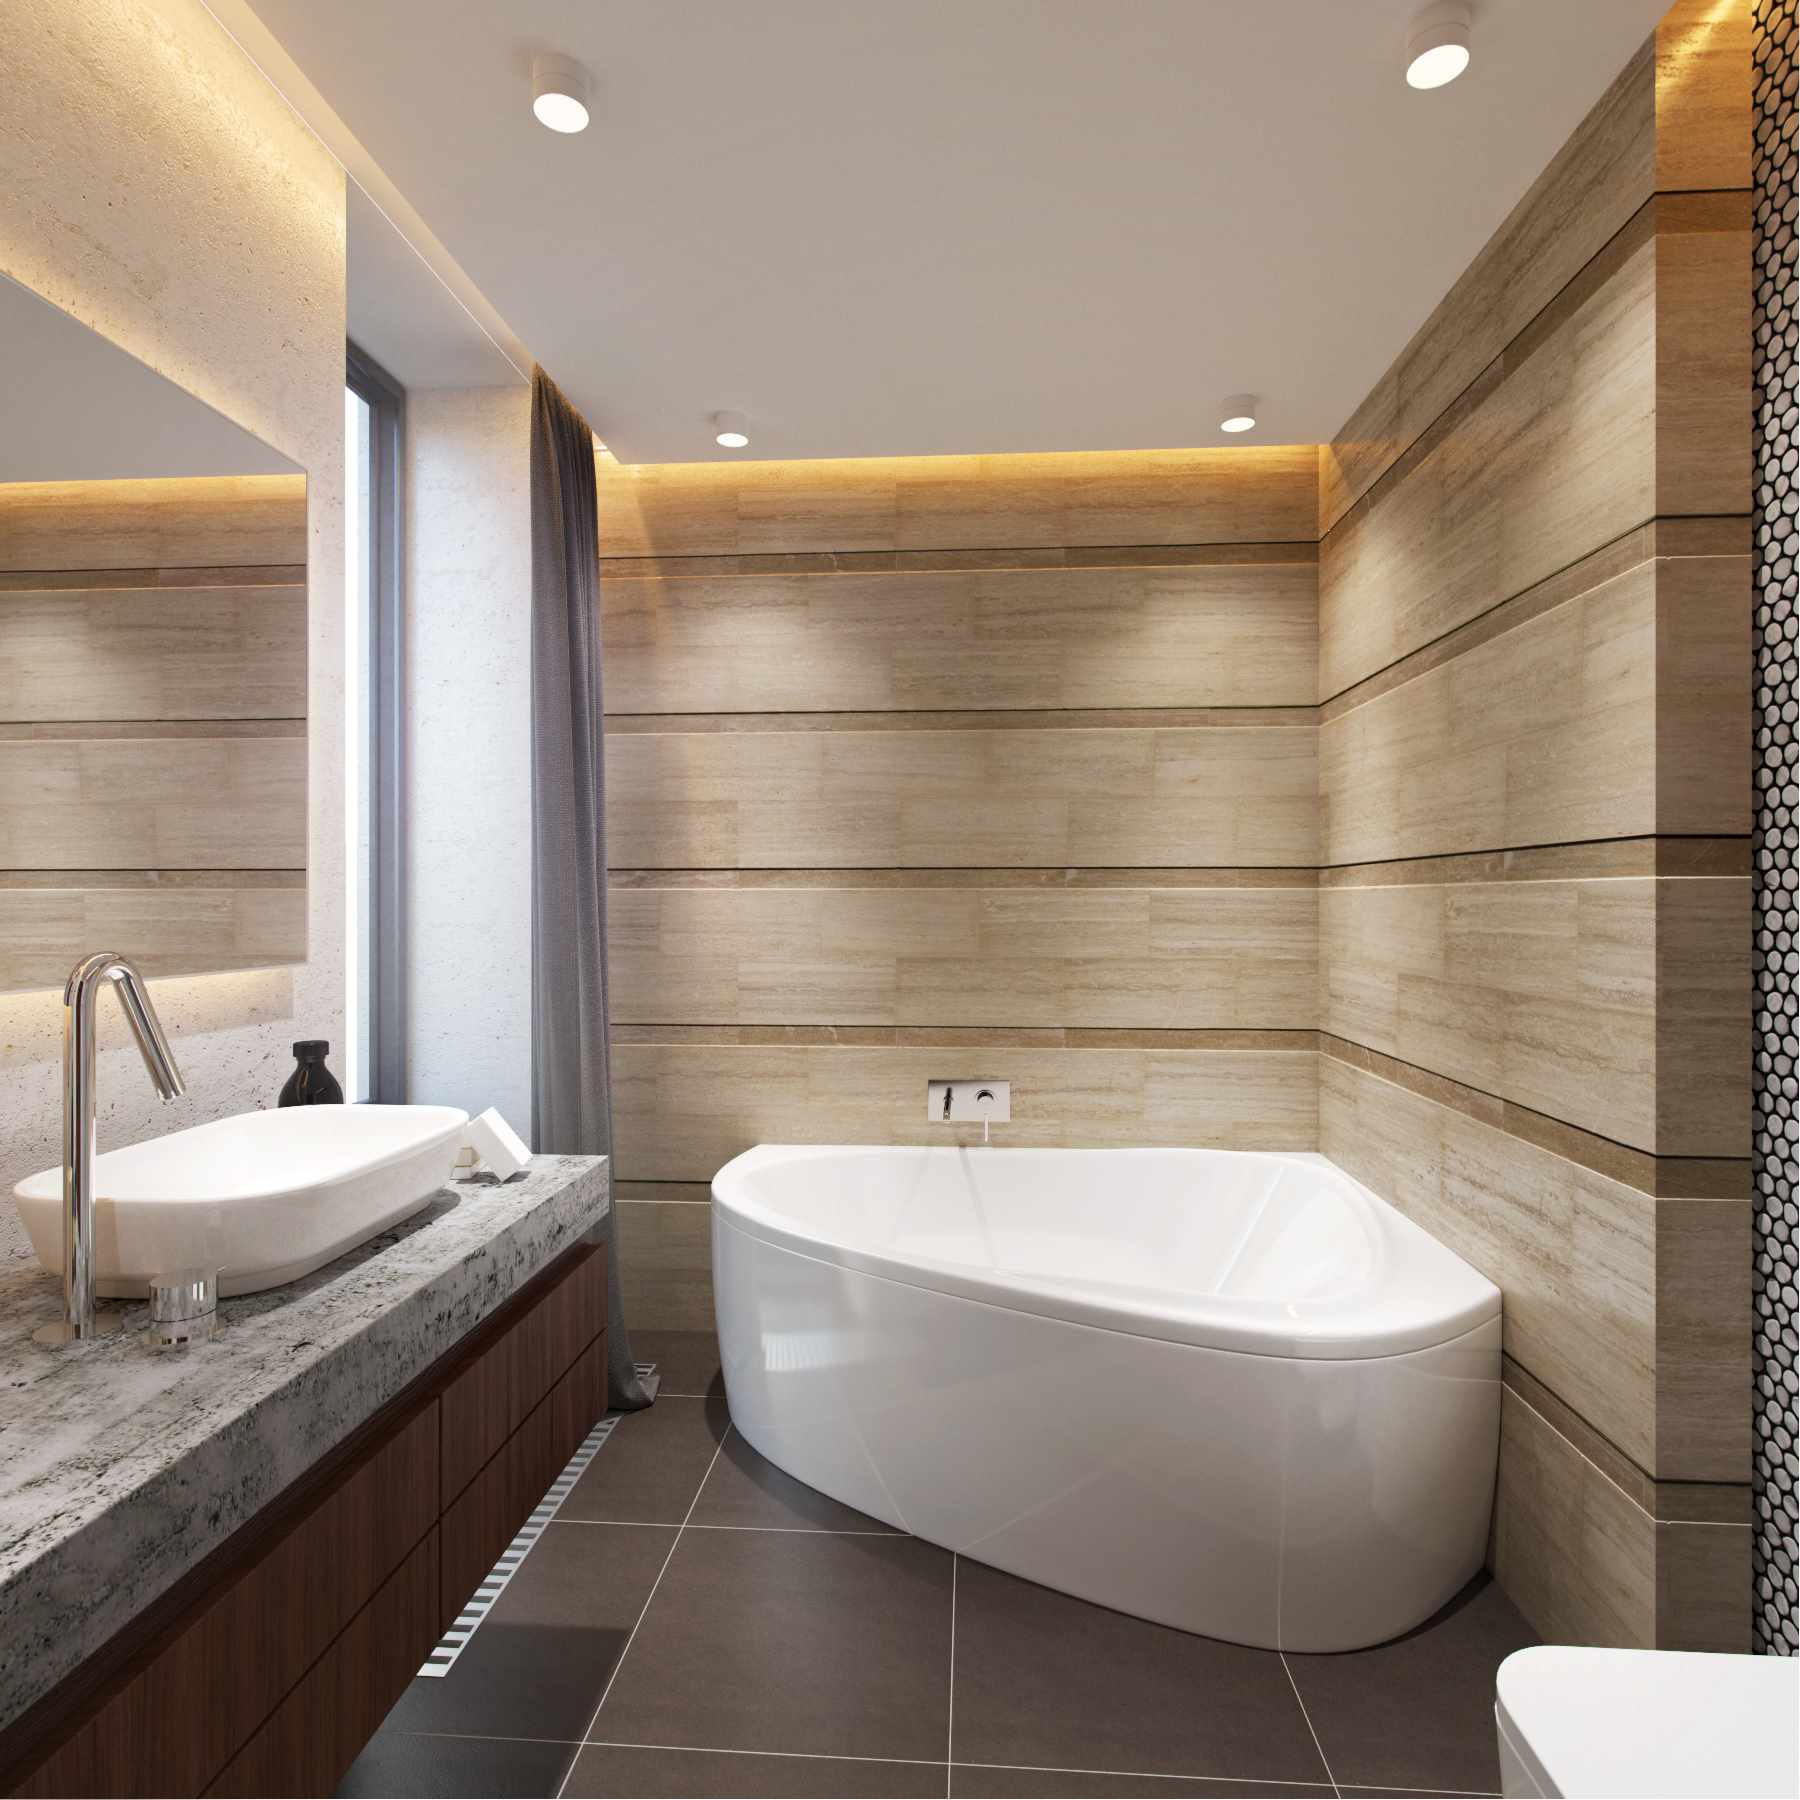 דוגמא לעיצוב קליל בחדר אמבטיה עם אמבטיה פינתית